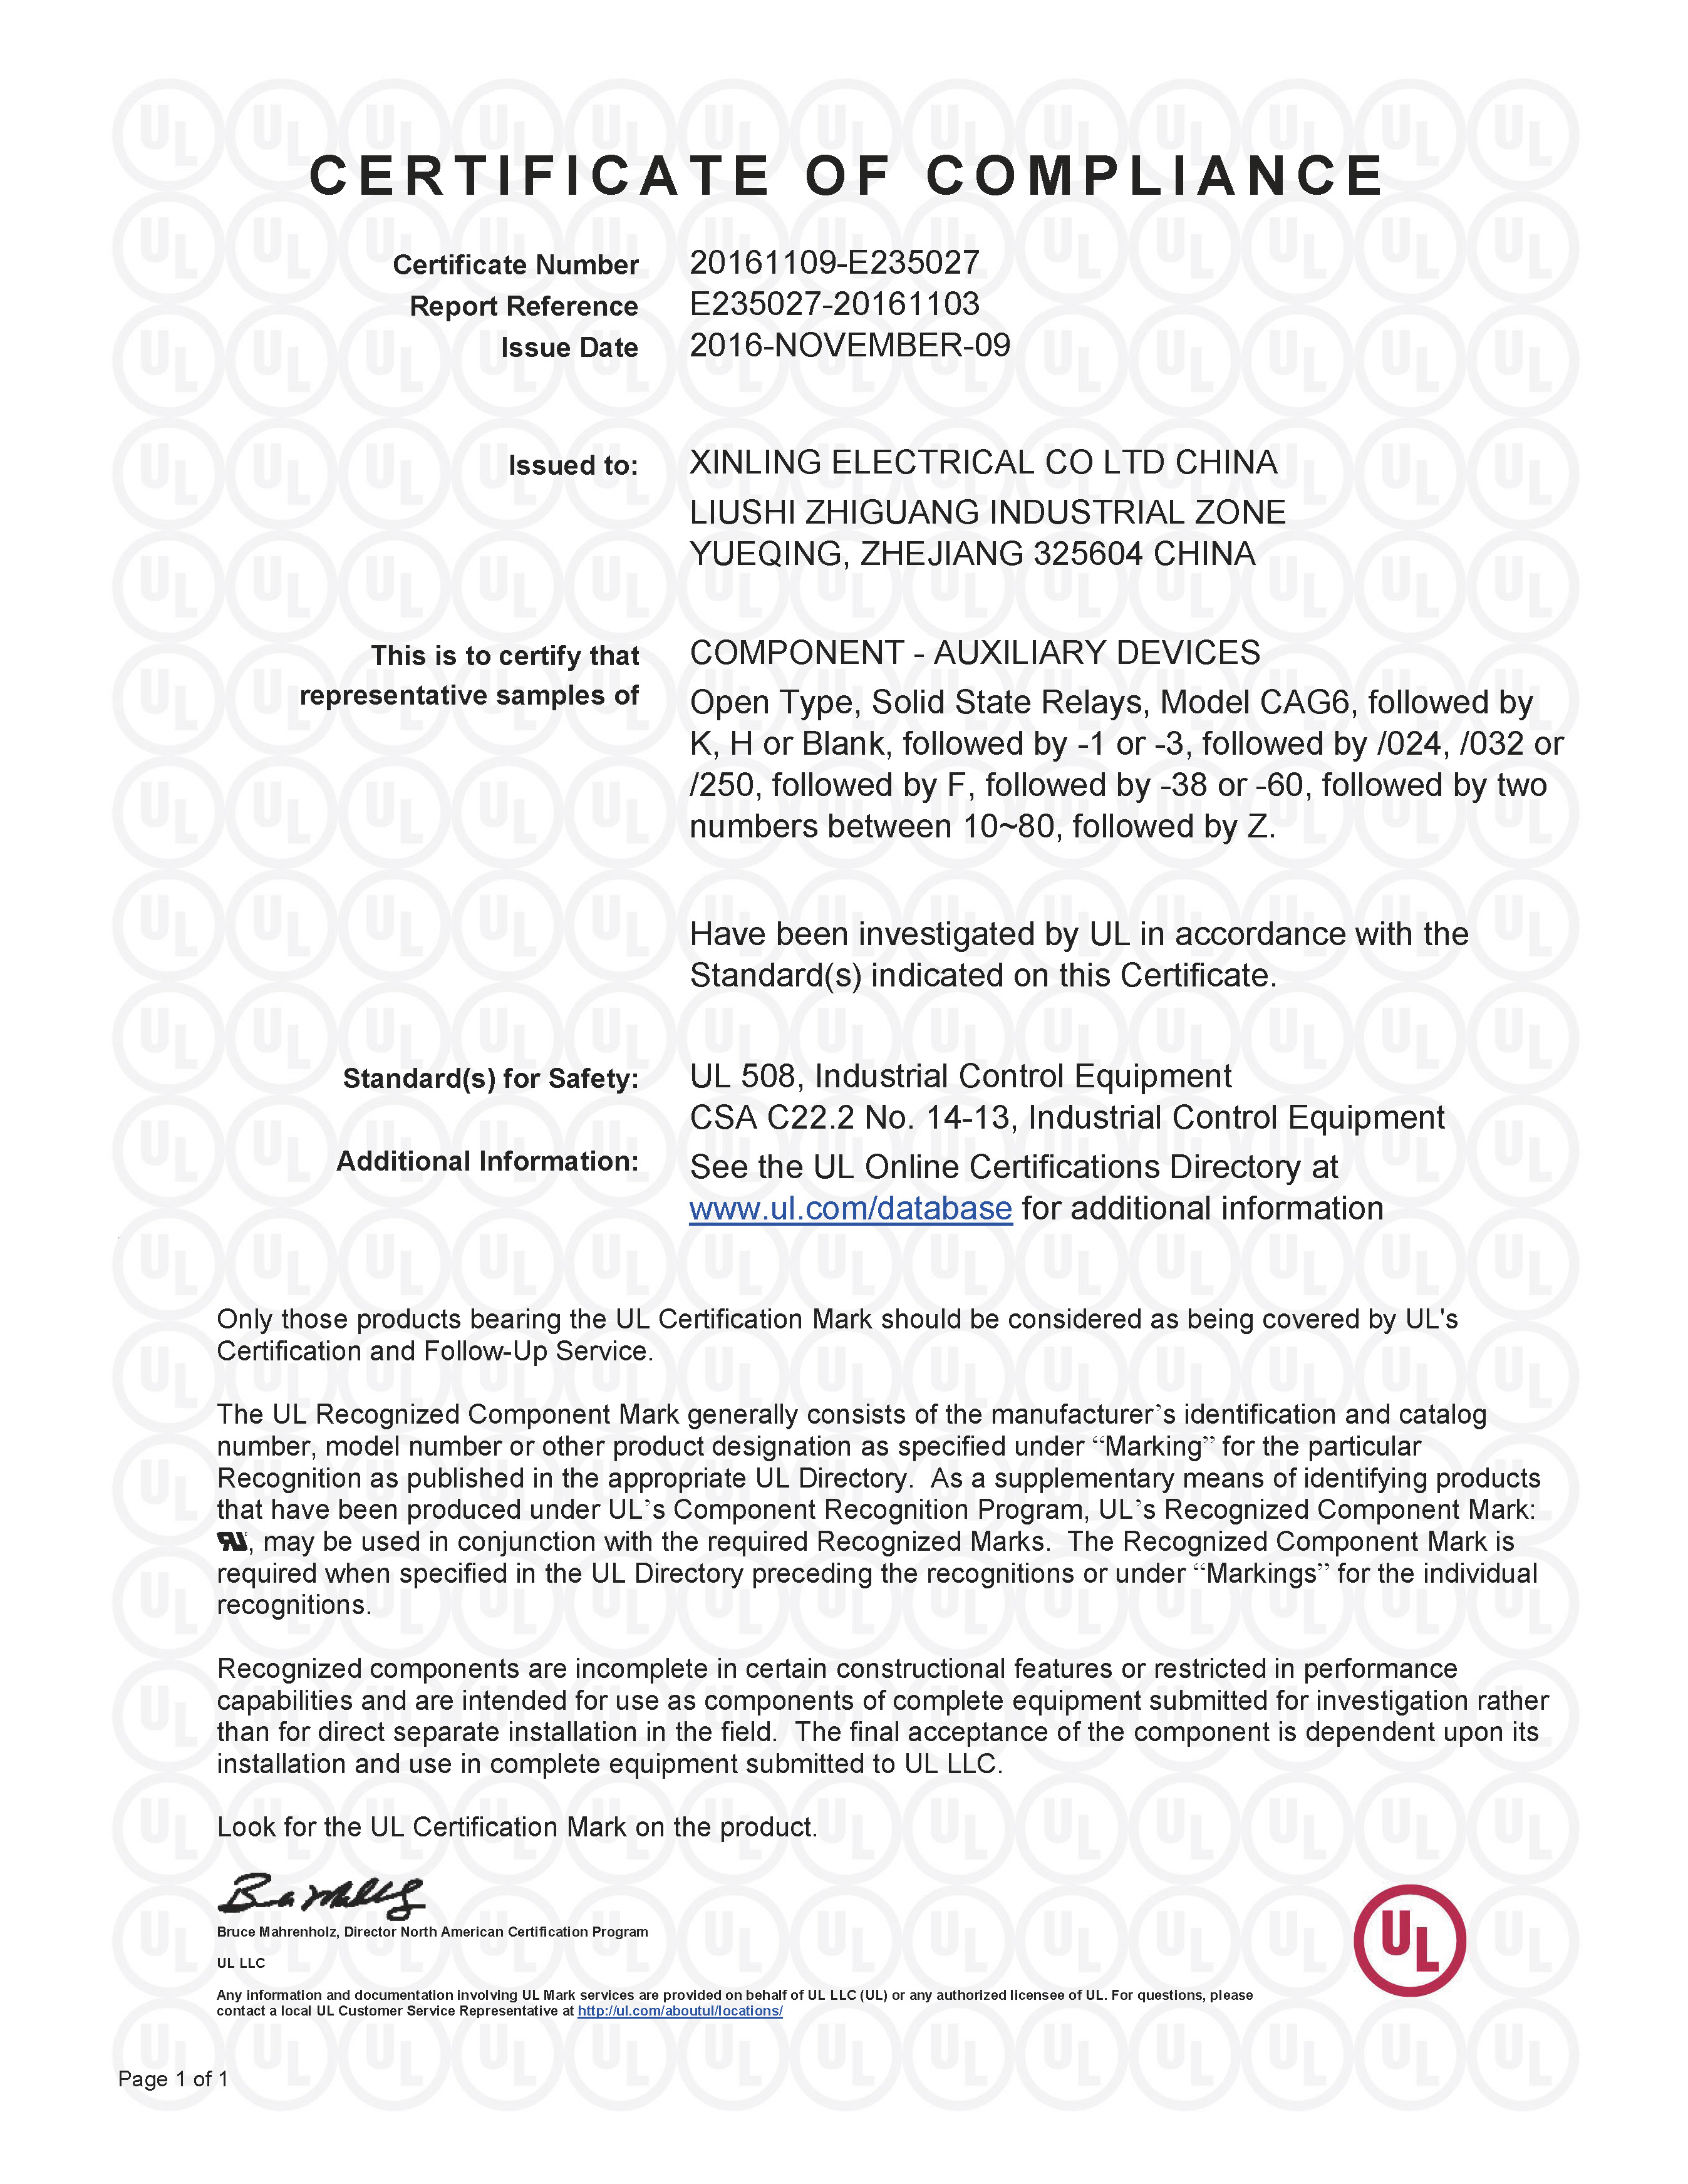 E235027-20161103-CertificateofCompliance